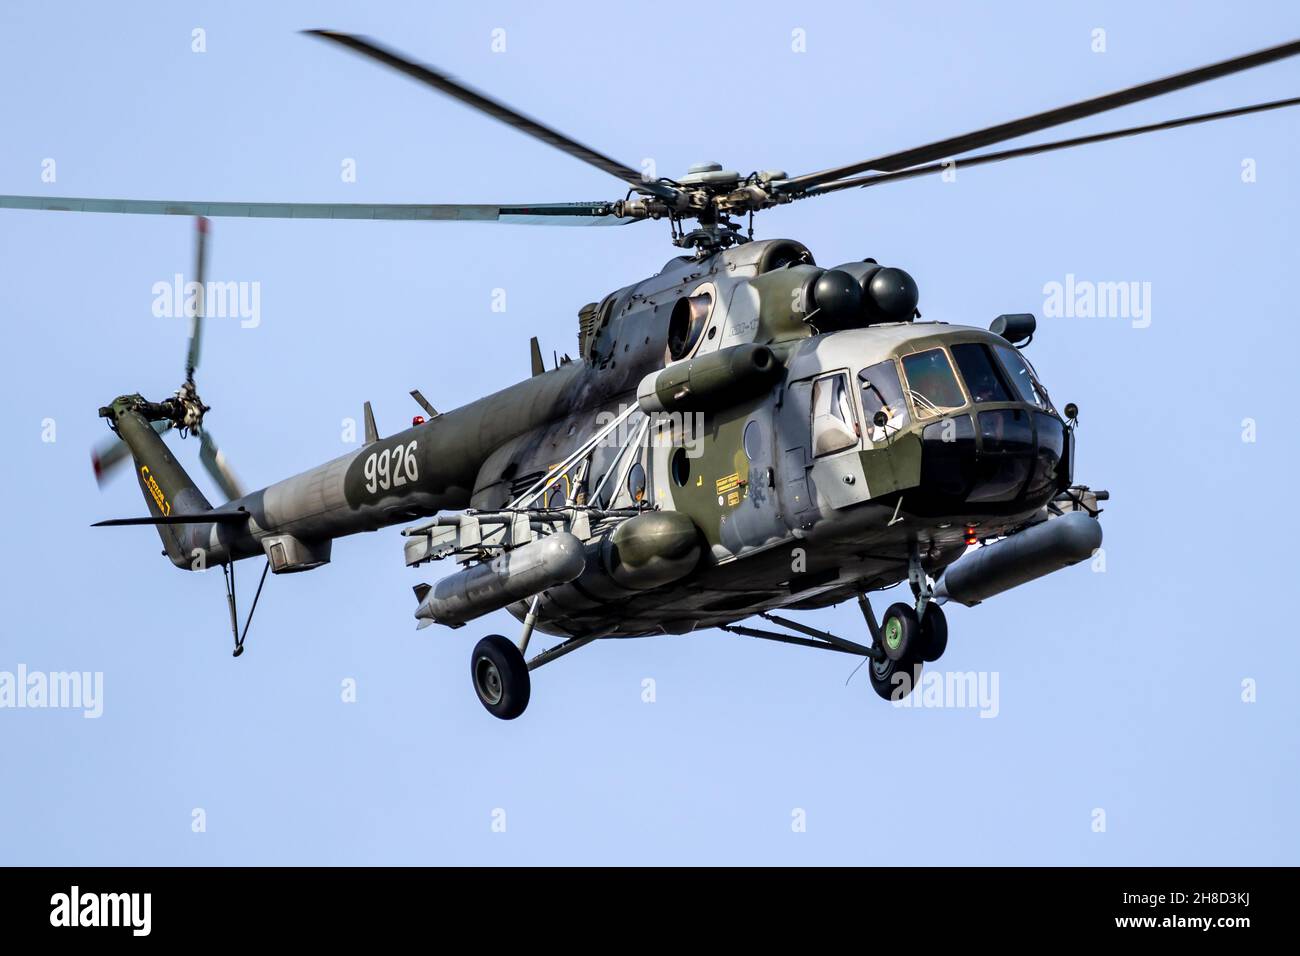 Repubblica Ceca Air Force MIL mi-171Sh trasporta e attacca elicottero in volo sopra la base aerea Kleine-Brogel, Belgio - 13 settembre 2021 Foto Stock